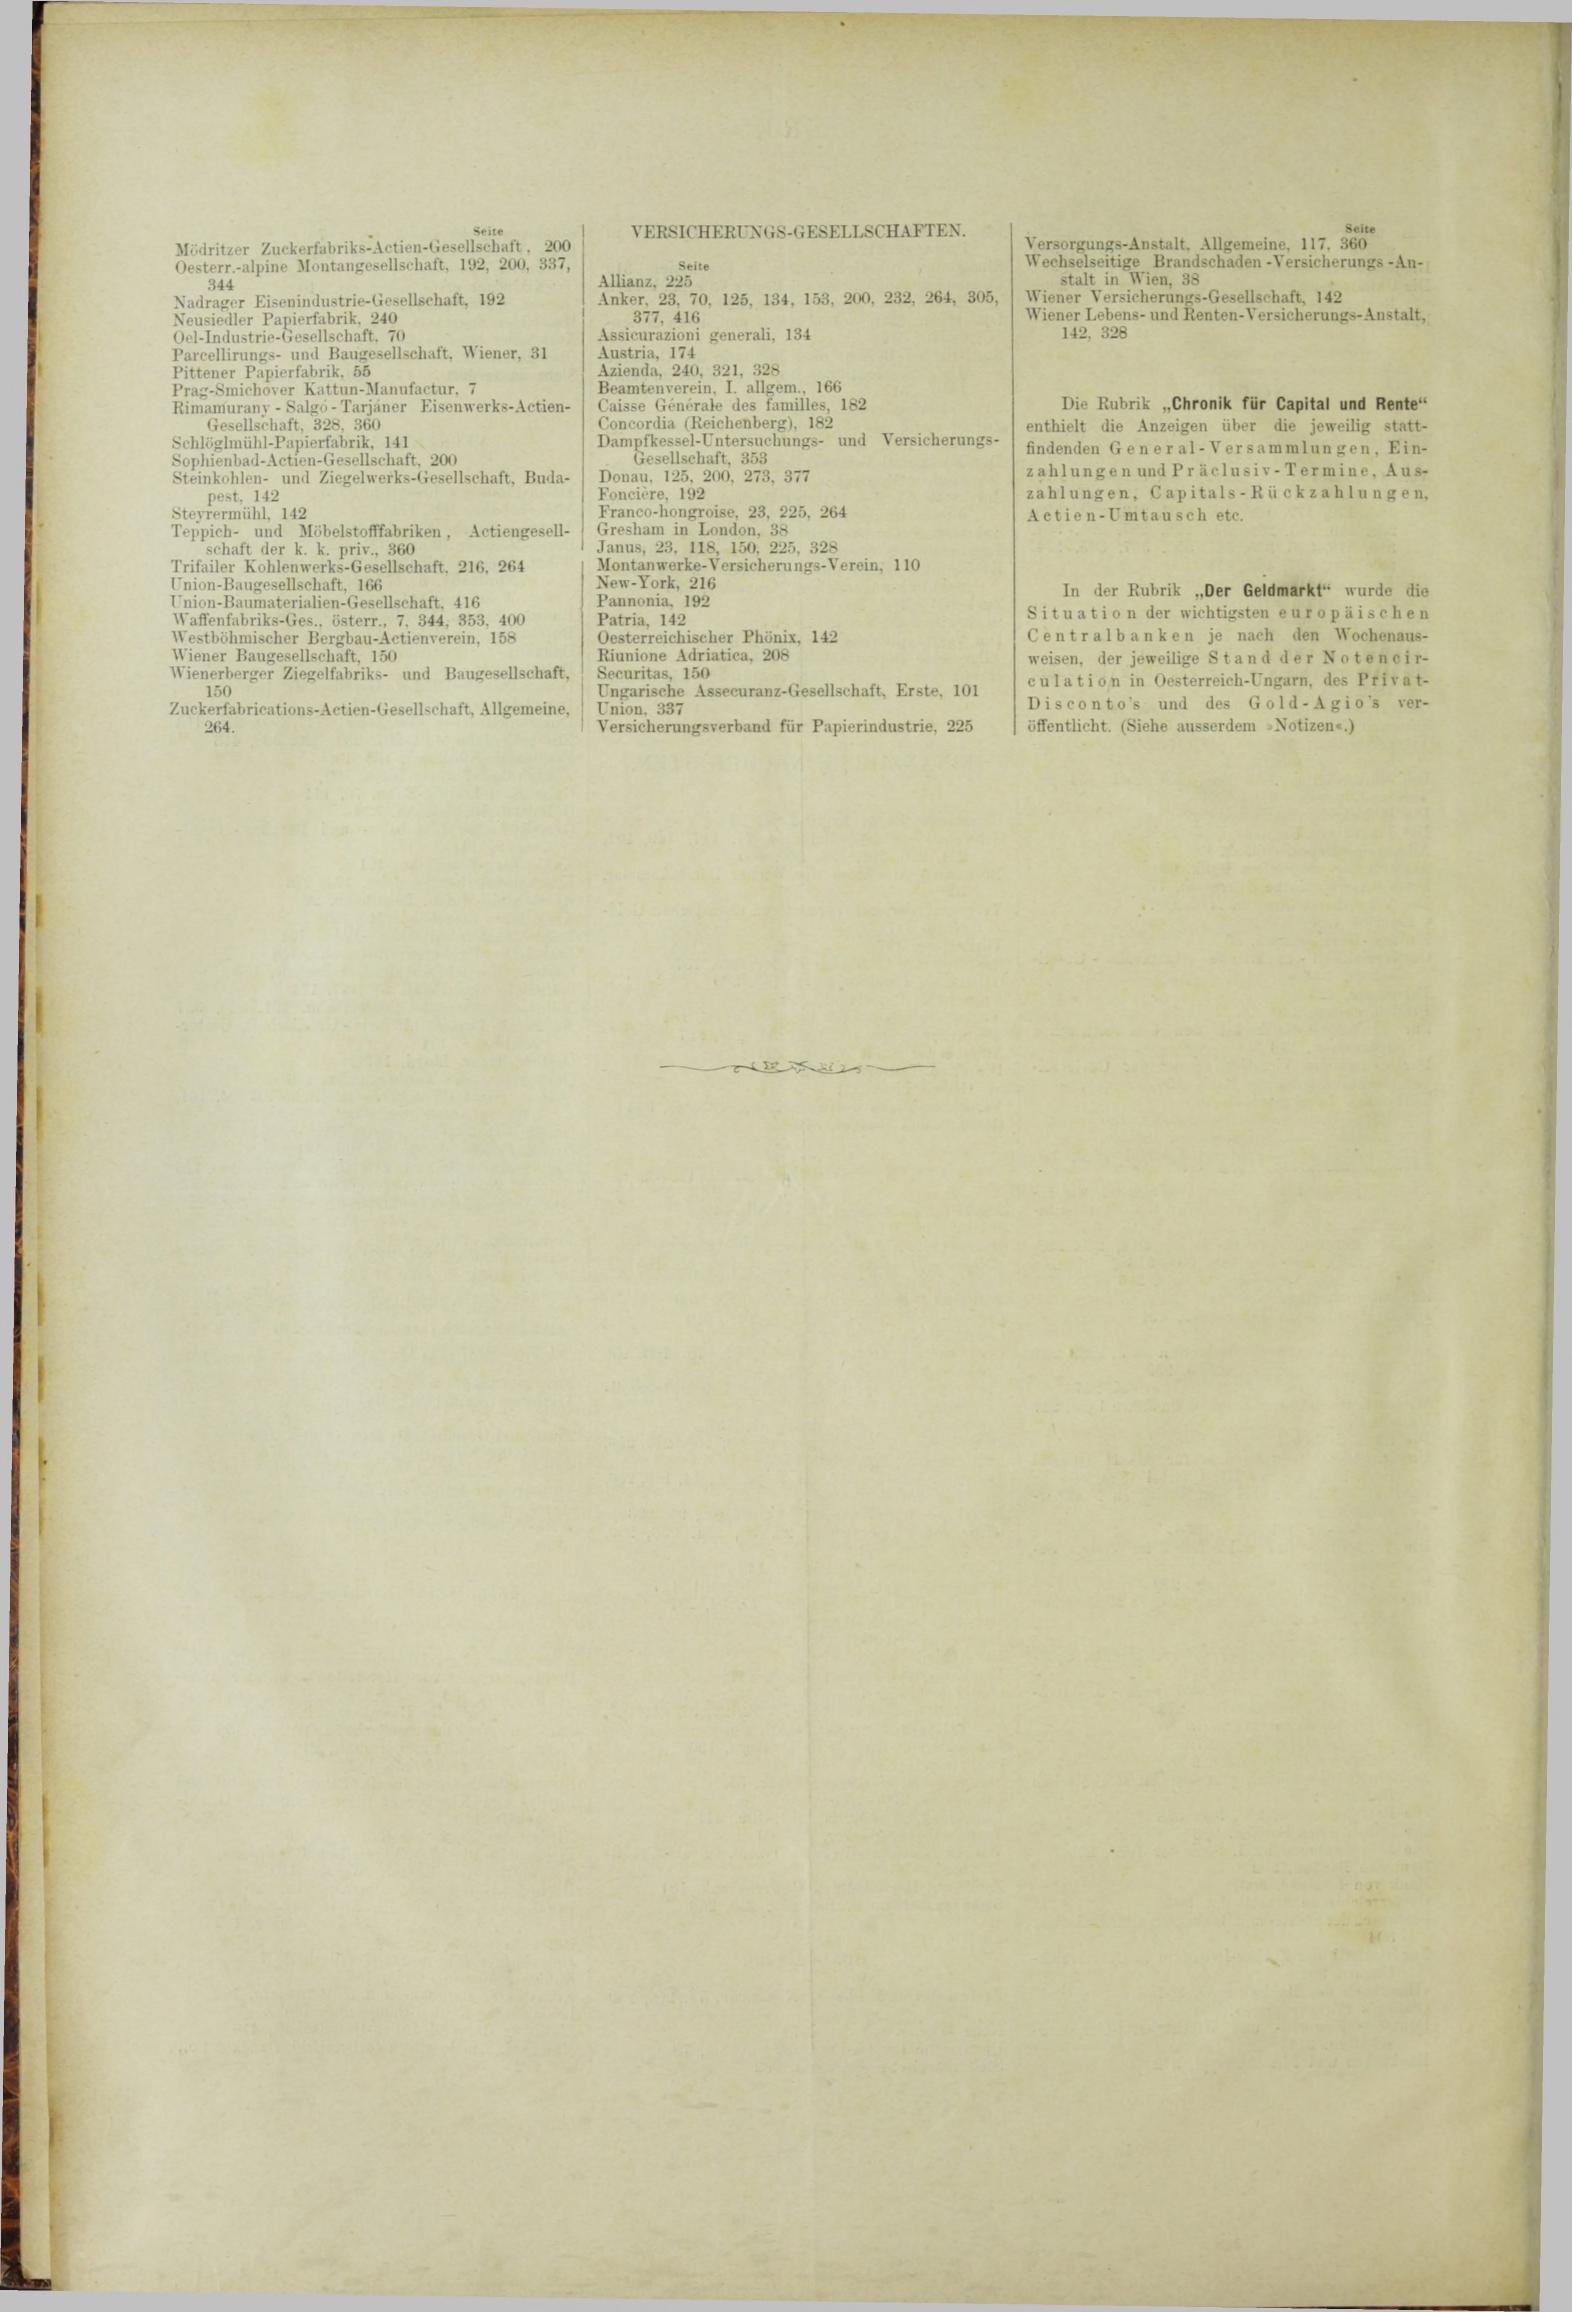 Der Tresor 09.08.1883 - Seite 12